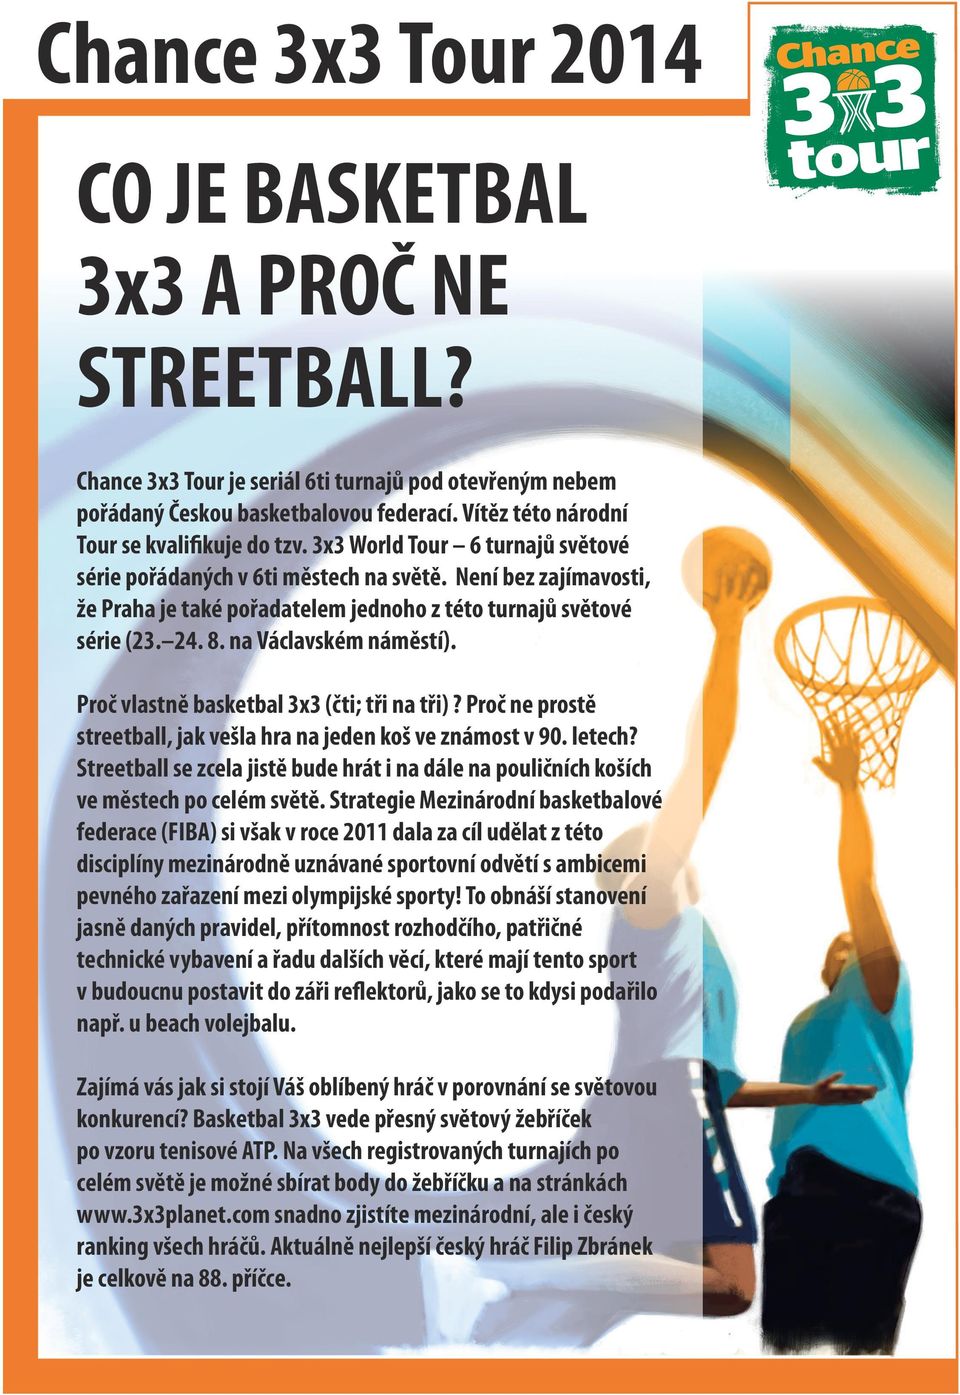 Proč vlastně basketbal 3x3 (čti; tři na tři)? Proč ne prostě streetball, jak vešla hra na jeden koš ve známost v 90. letech?